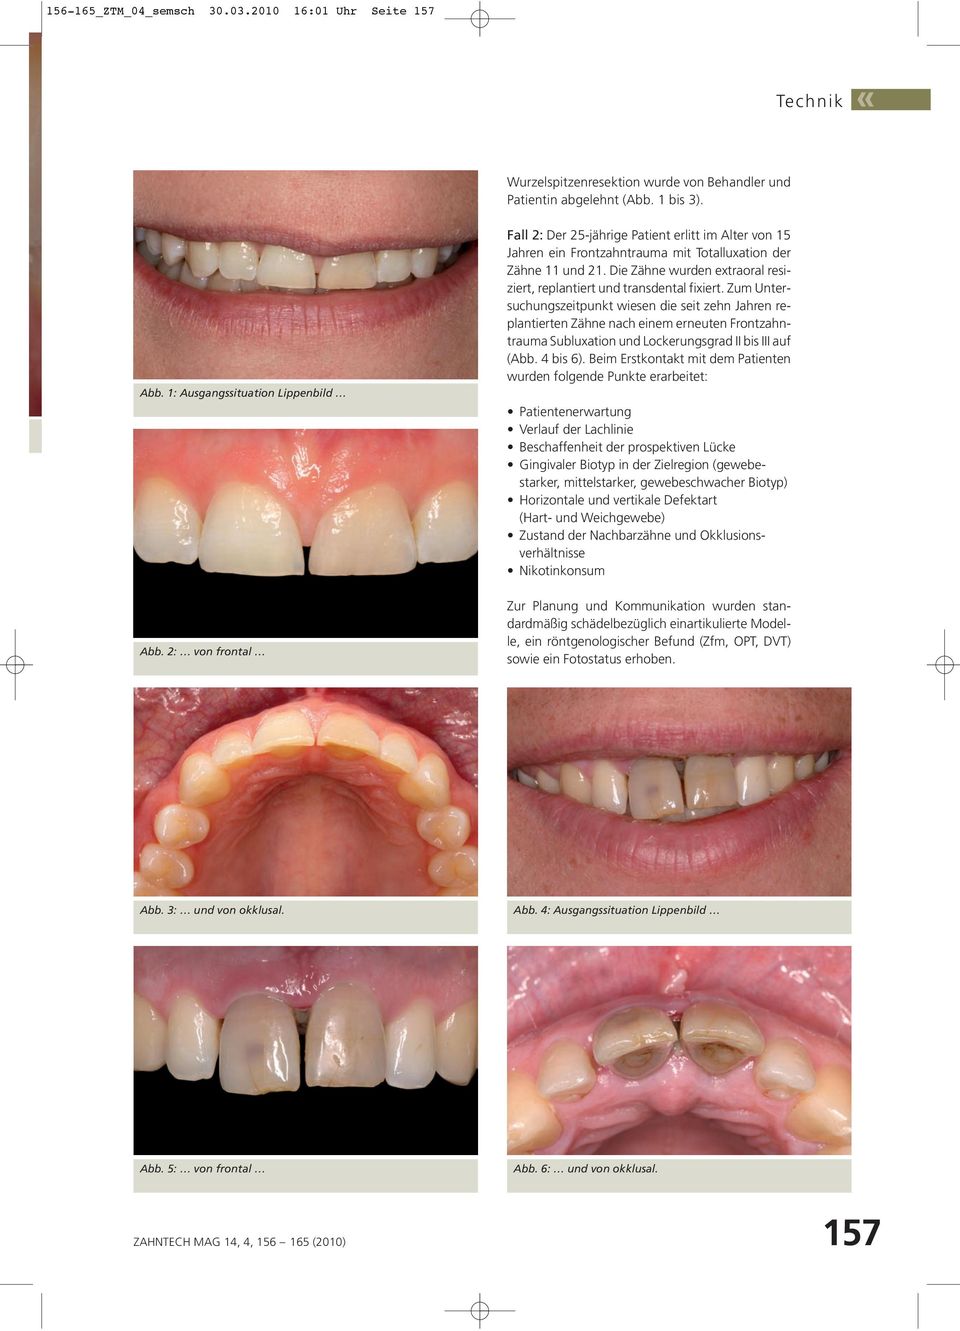 Die Zähne wurden extraoral resiziert, replantiert und transdental fixiert.